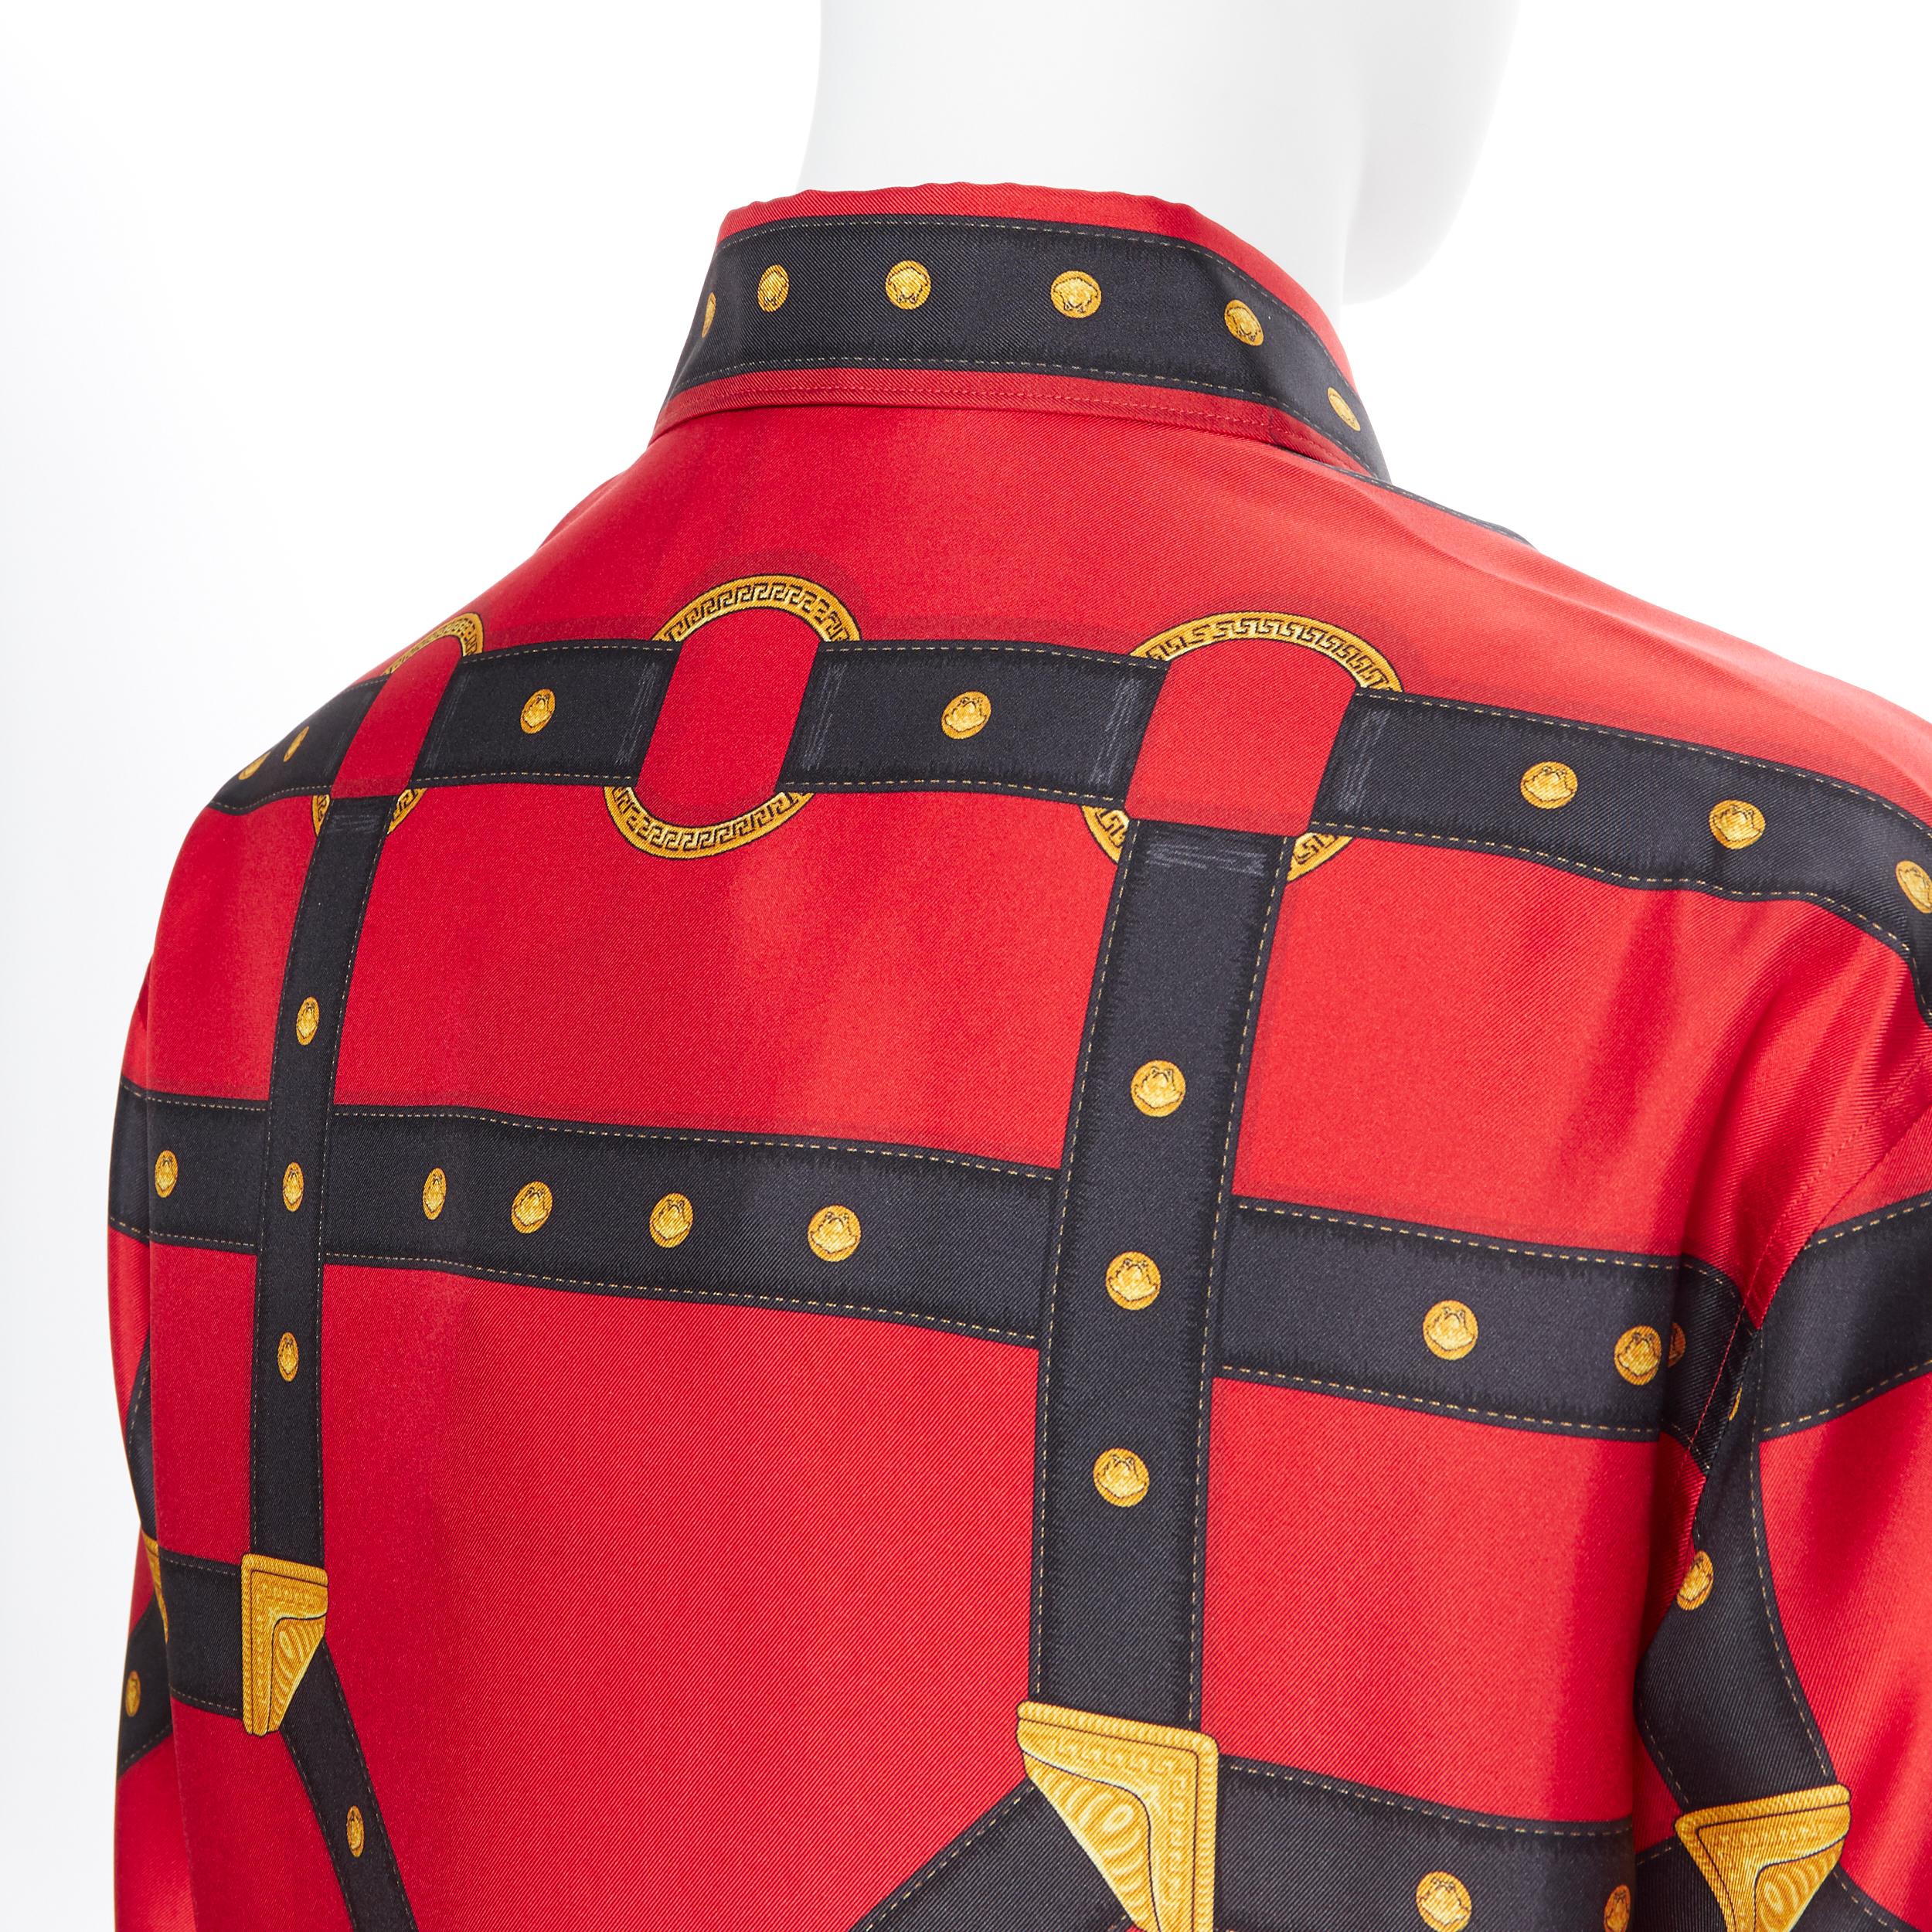 new VERSACE 2019 Runway 100% silk red black gold Medusa harness shirt EU41 XL 1